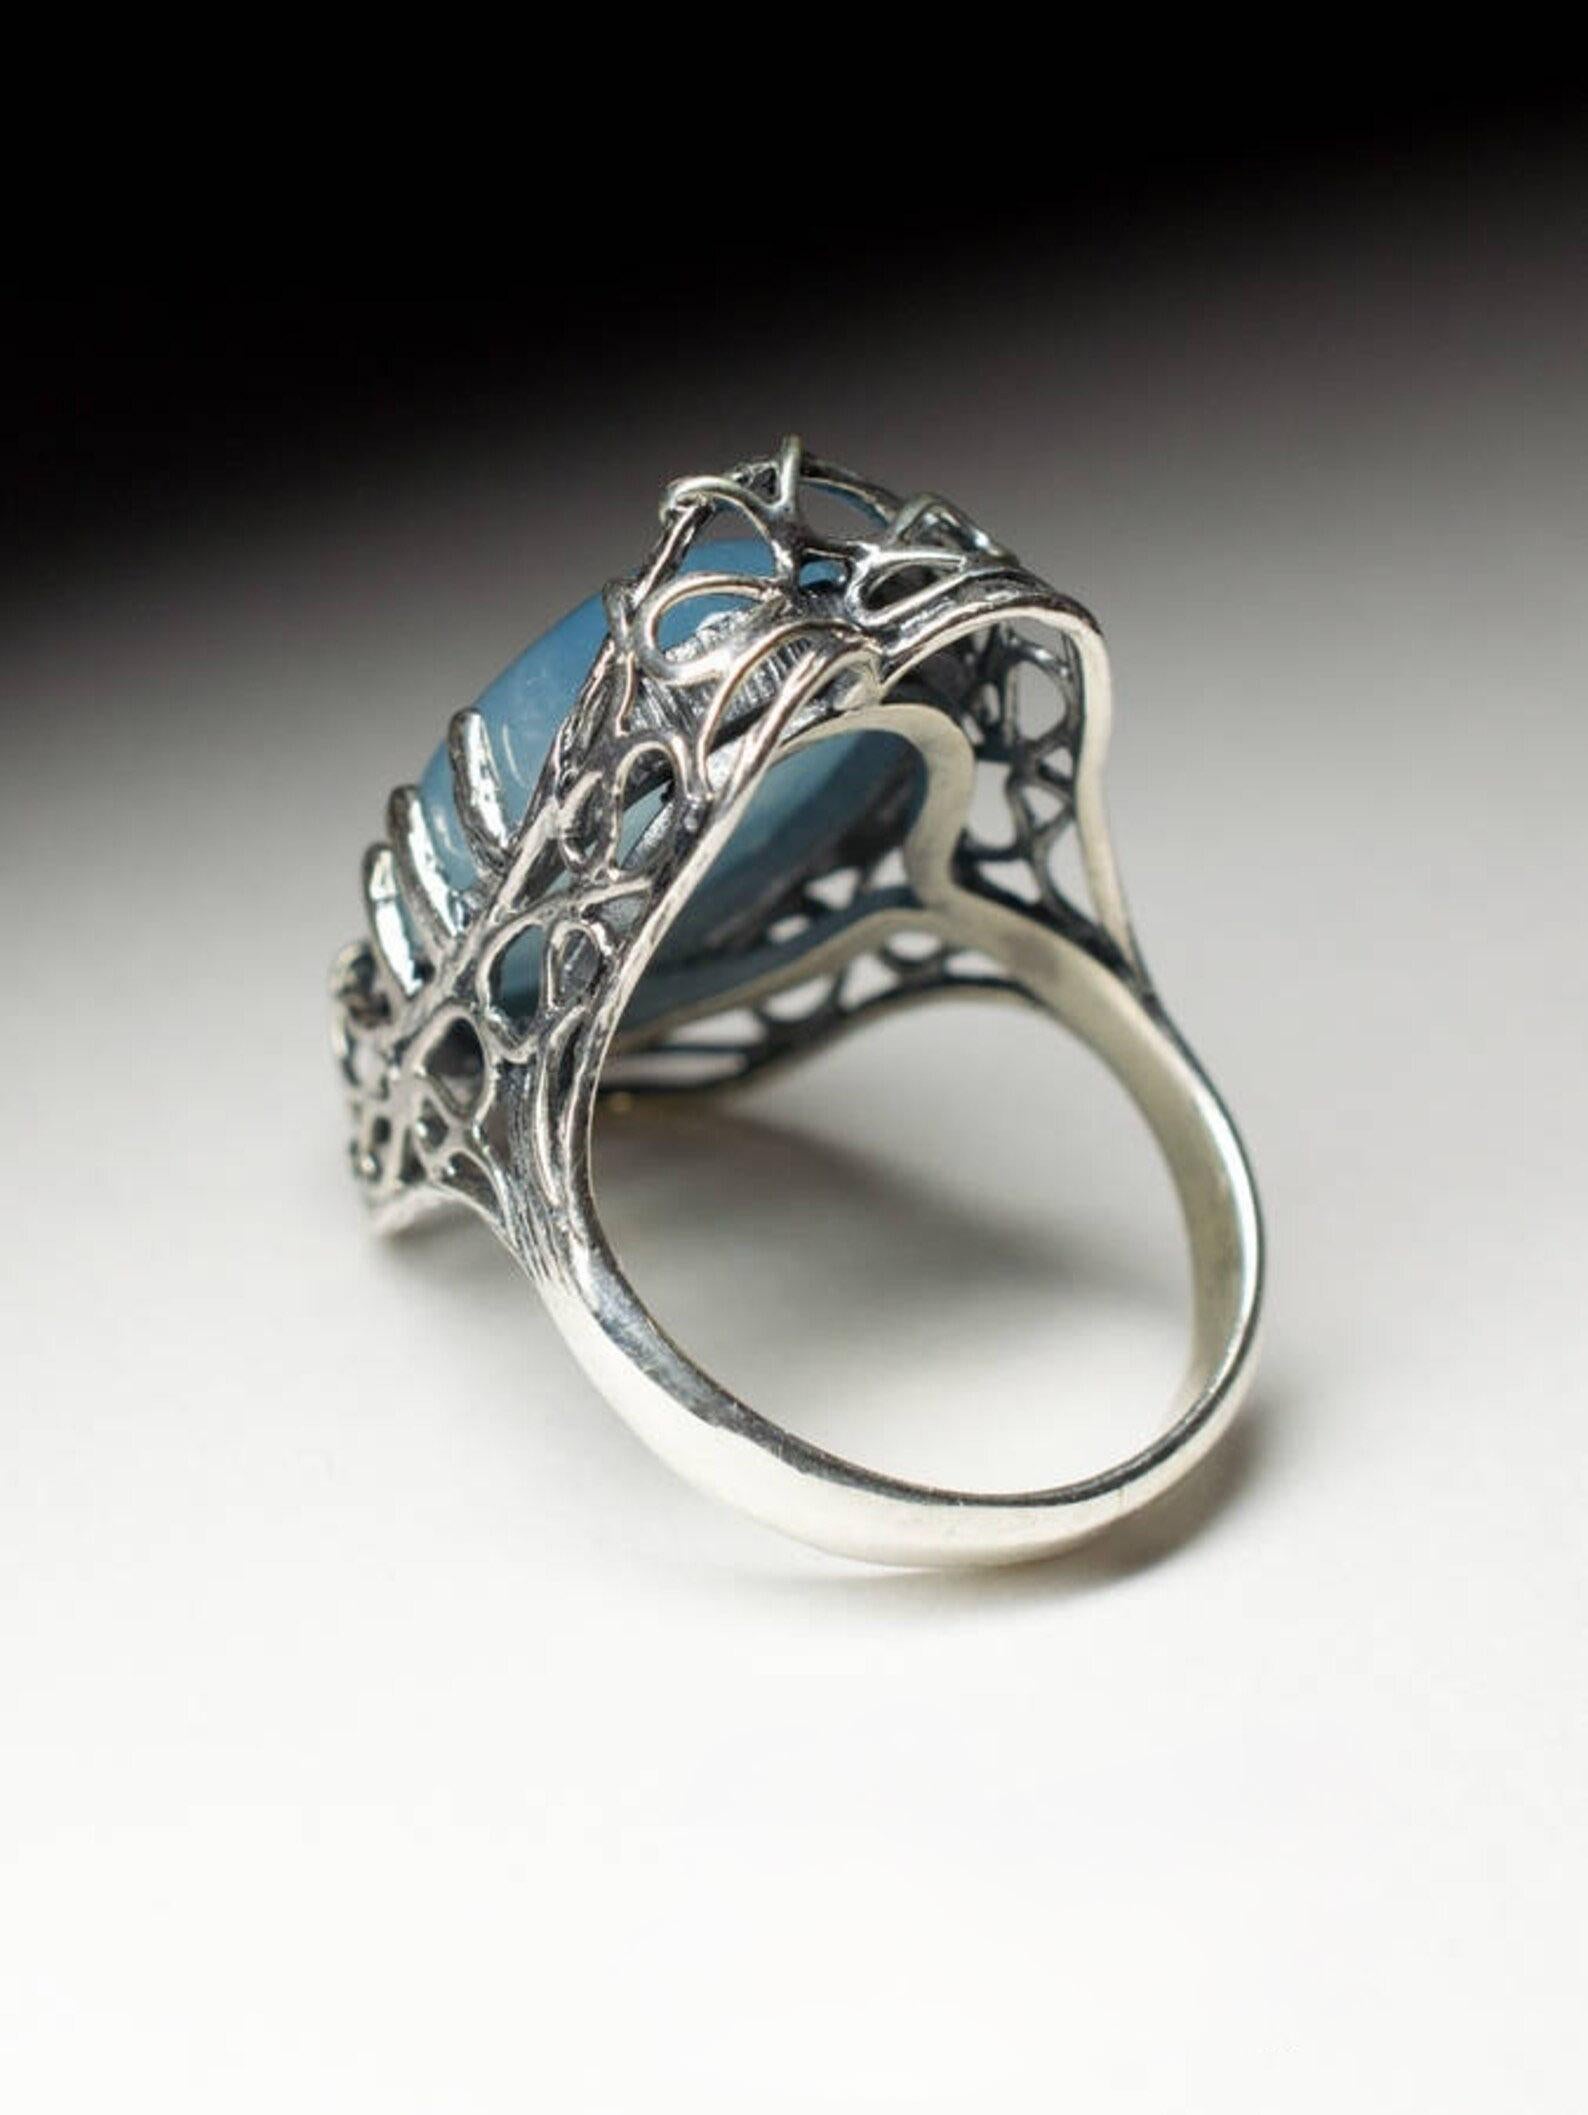 Aquamarine Ring Gothic style Light Blue Icy Beryl Cabochon Gemstone vintage 4